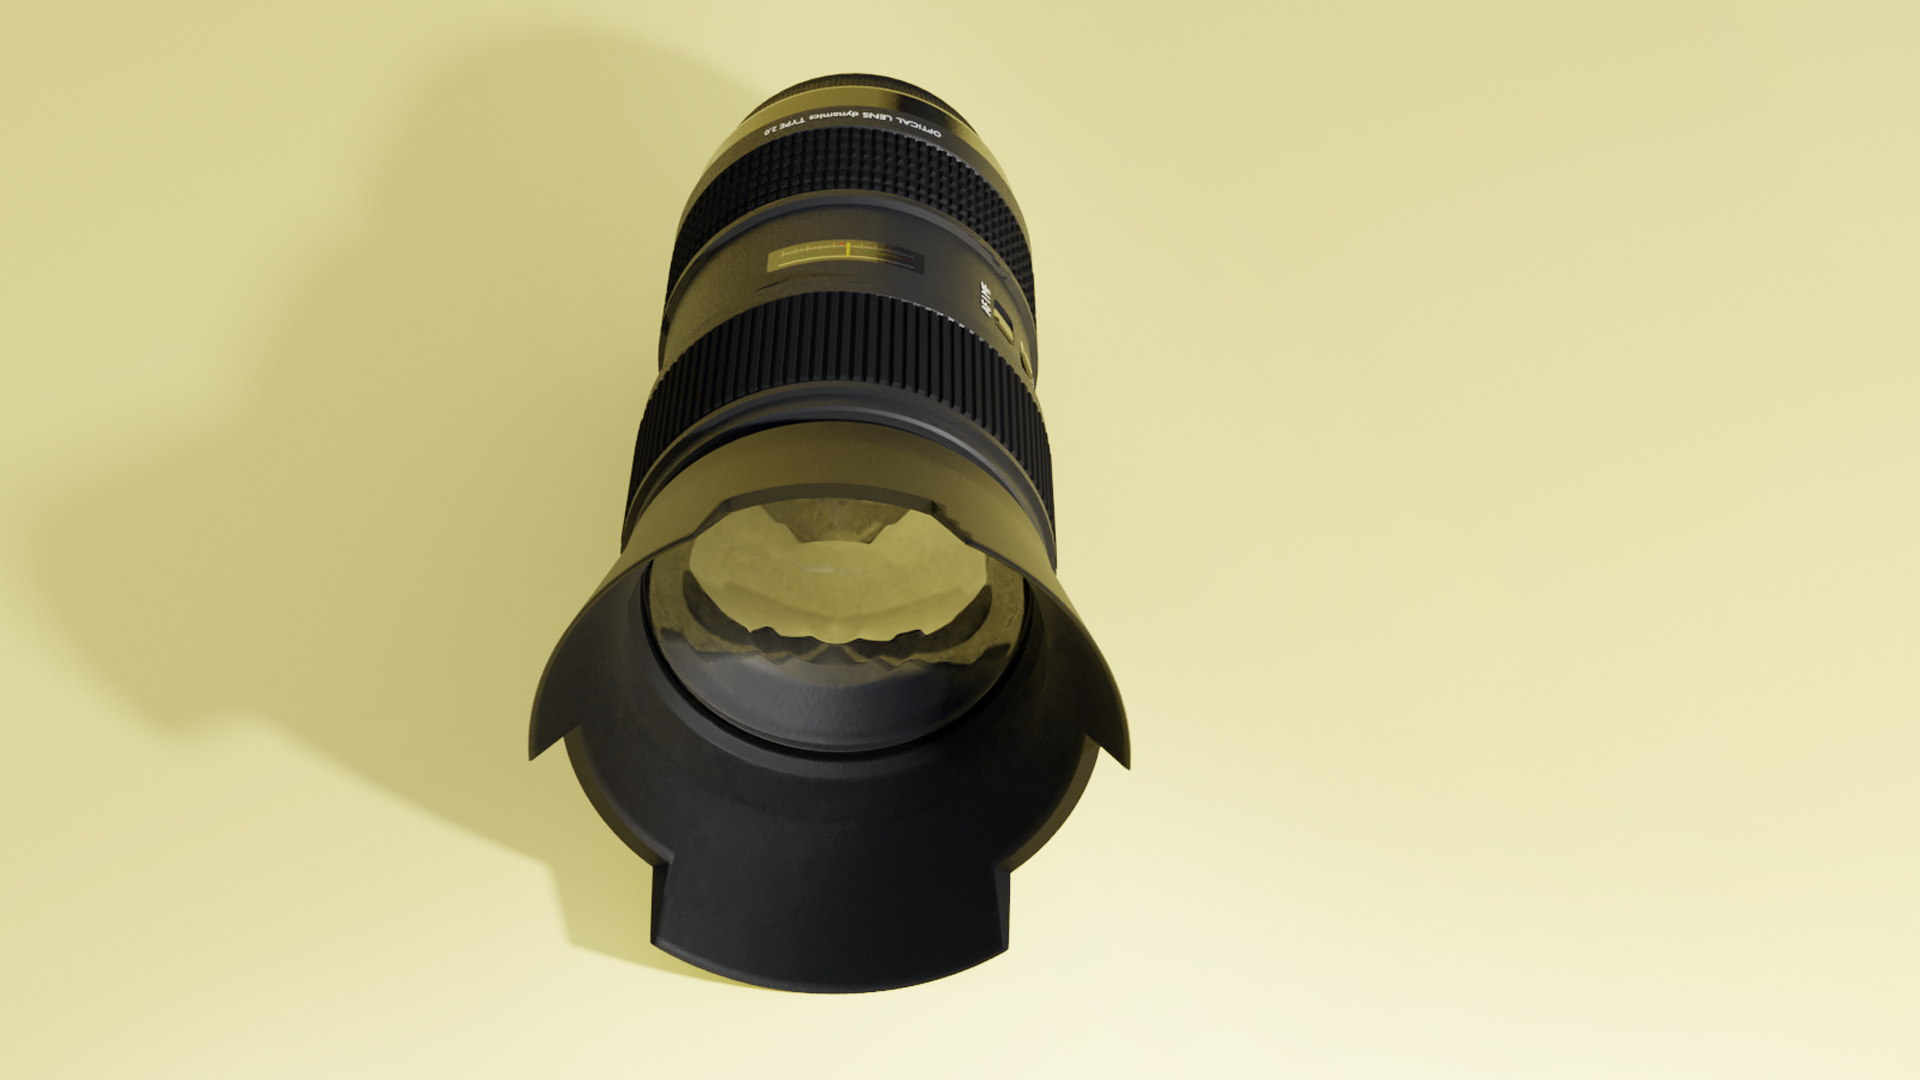 Mostly Procedural - Camera-Objectiv -Blender 2.9 preview image 4